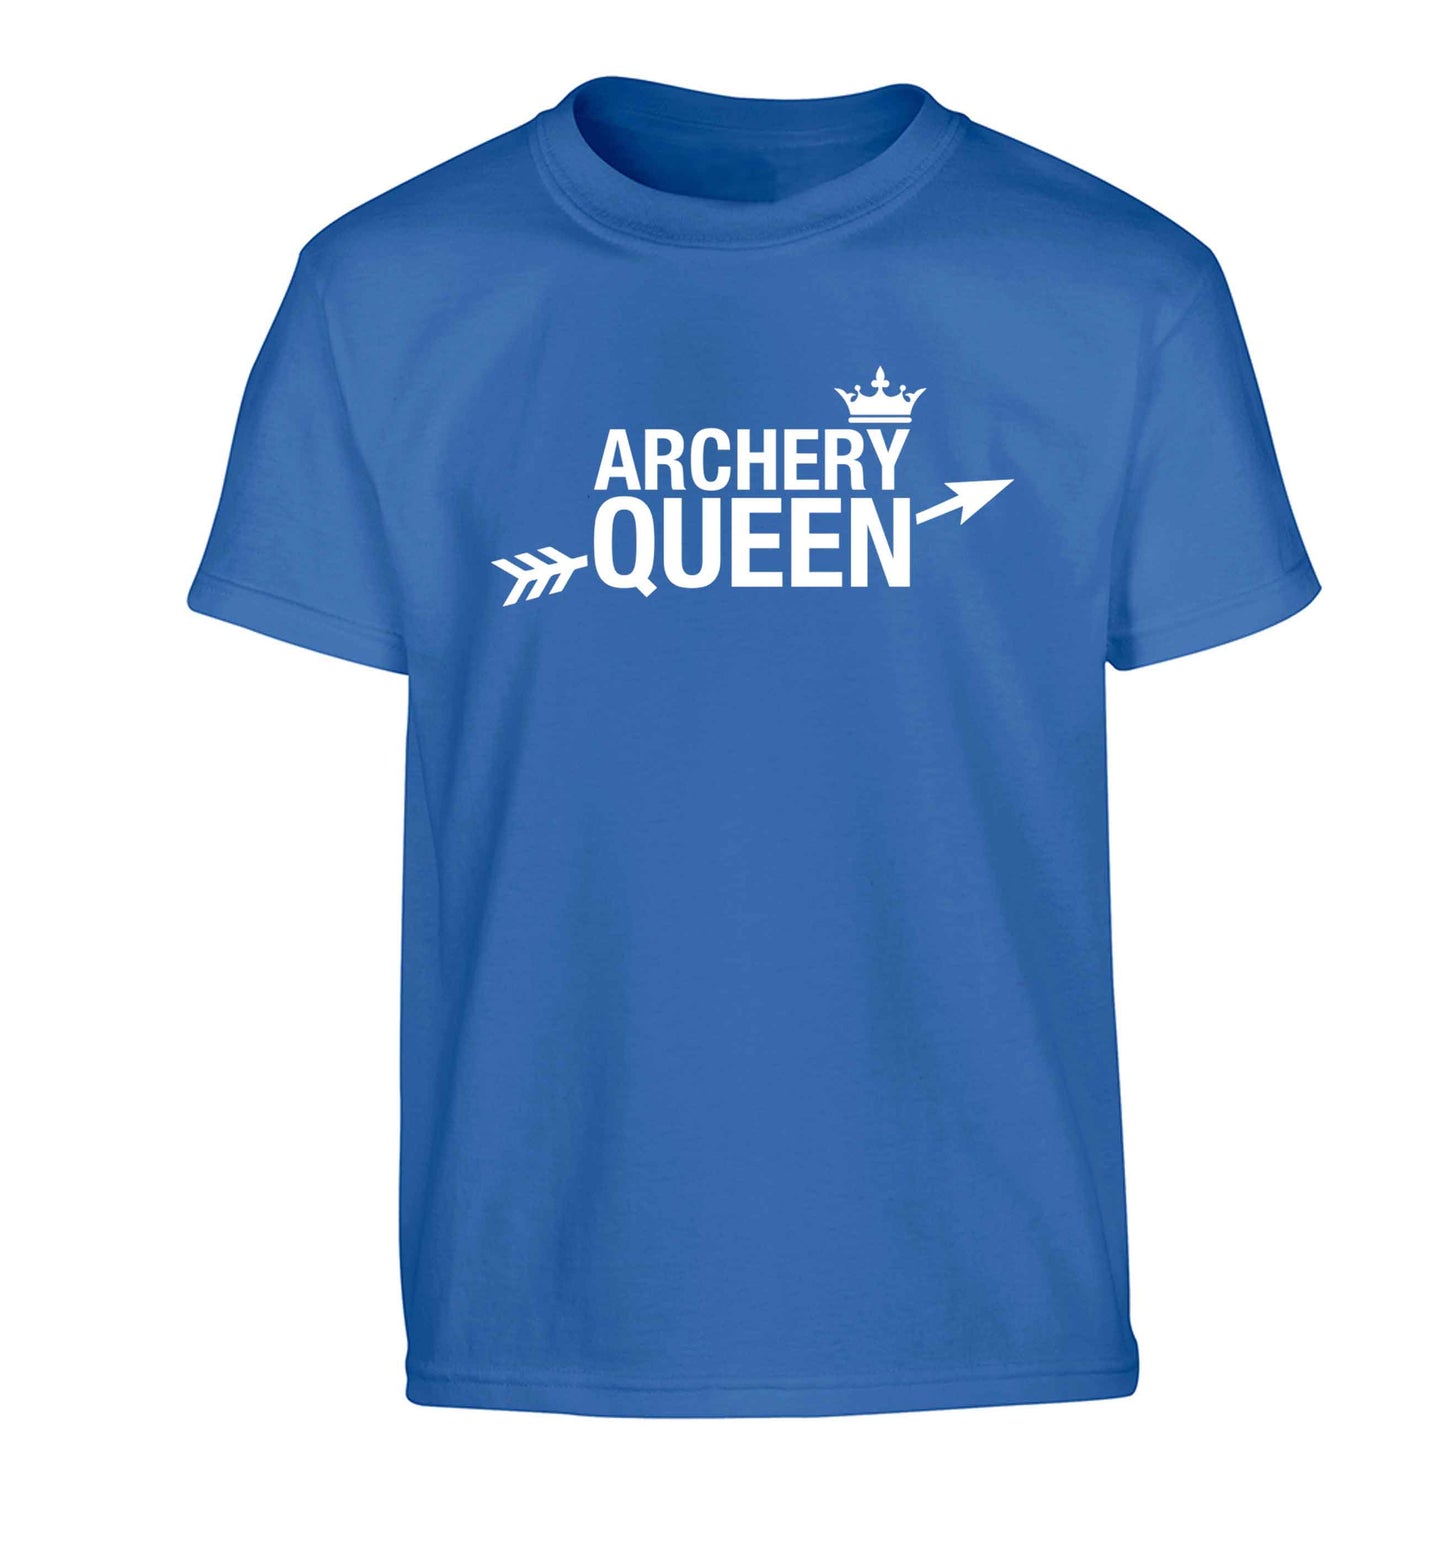 Archery queen Children's blue Tshirt 12-13 Years